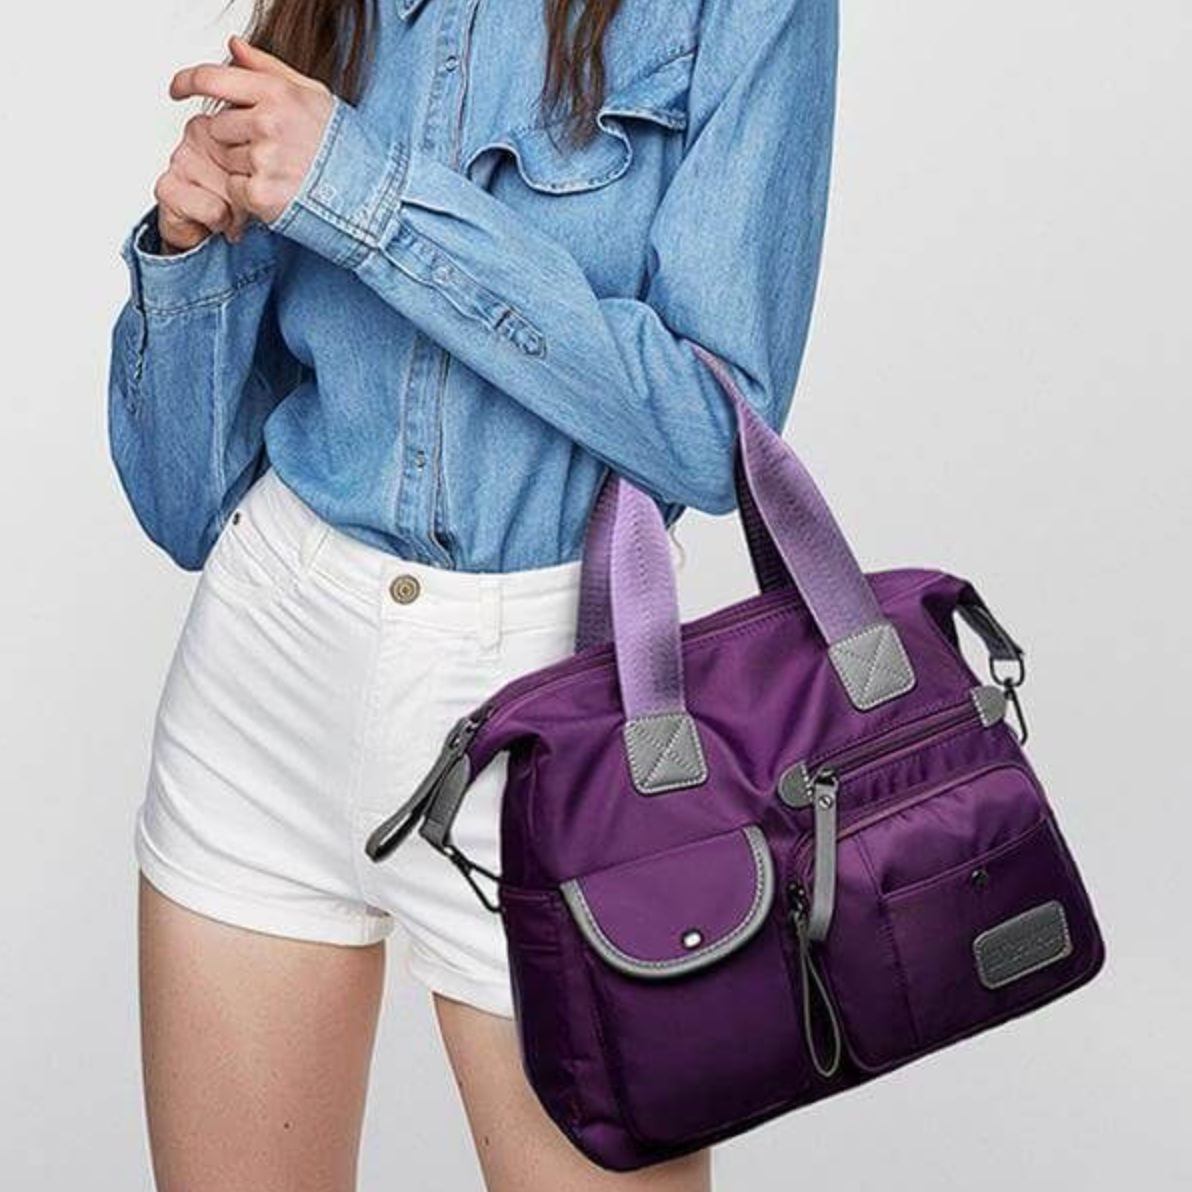 Nancy Multifunctional Handbags Solid Shoulder Bags